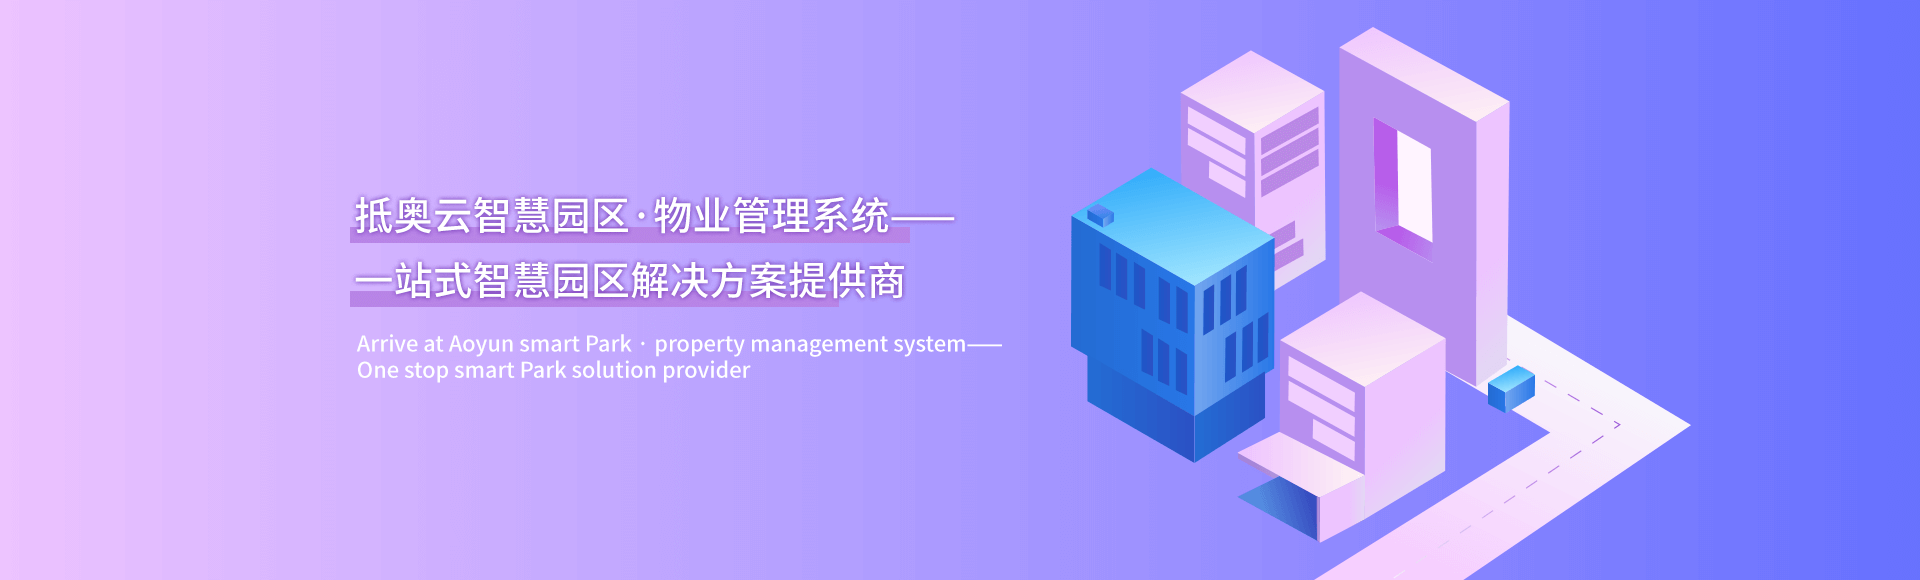 广州智能建模平台——将“机器学习、商业智能”这些名词，转化为智能建模系统-轮播图1